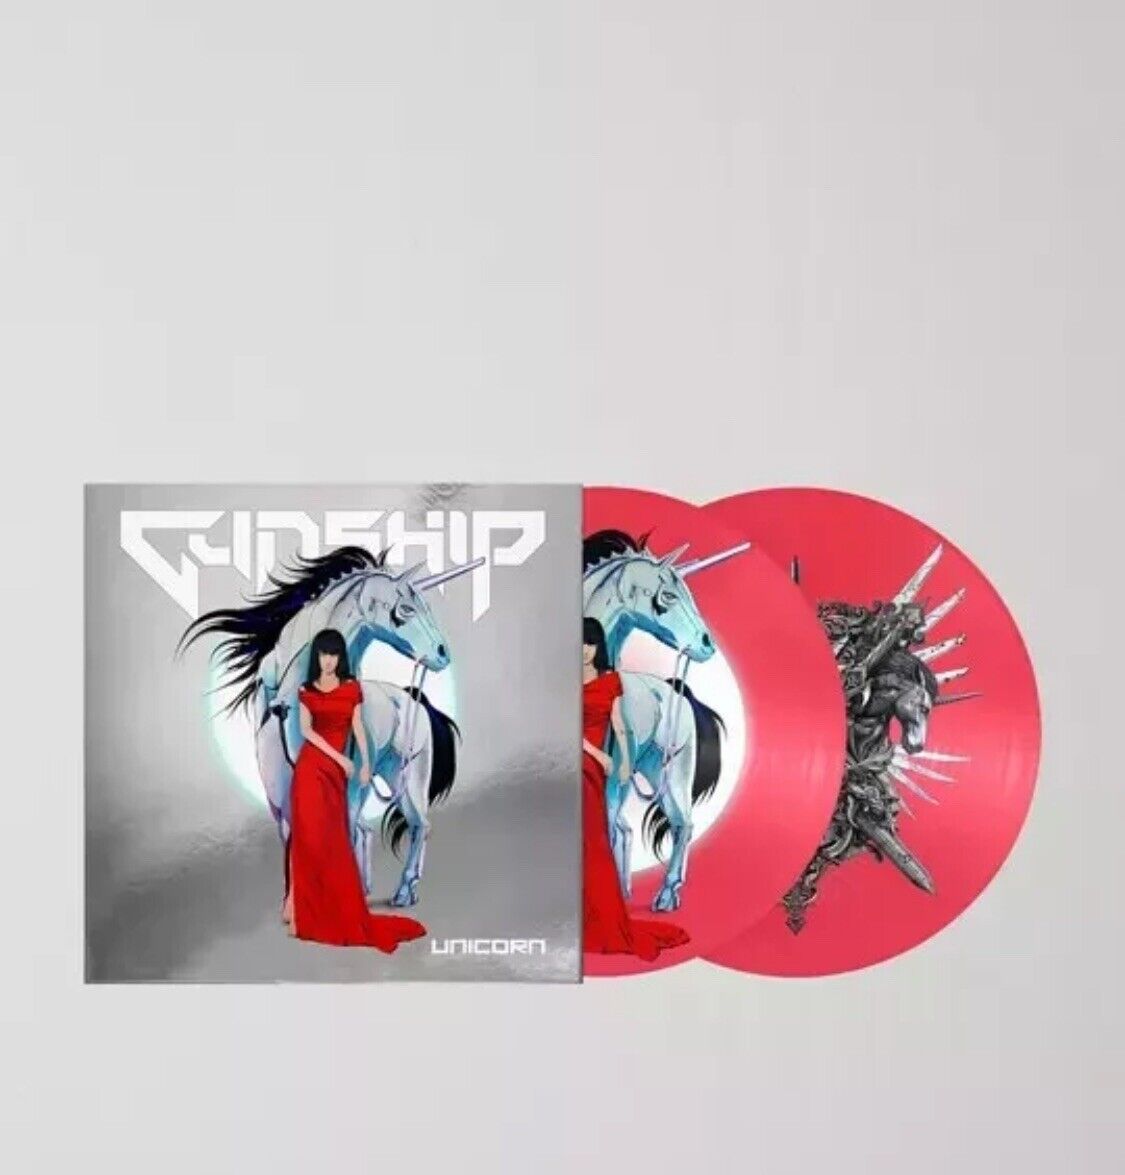 Gunship Unicorn Exclusive Limited Unicorn Picture Disc Colored Vinyl 2XLP